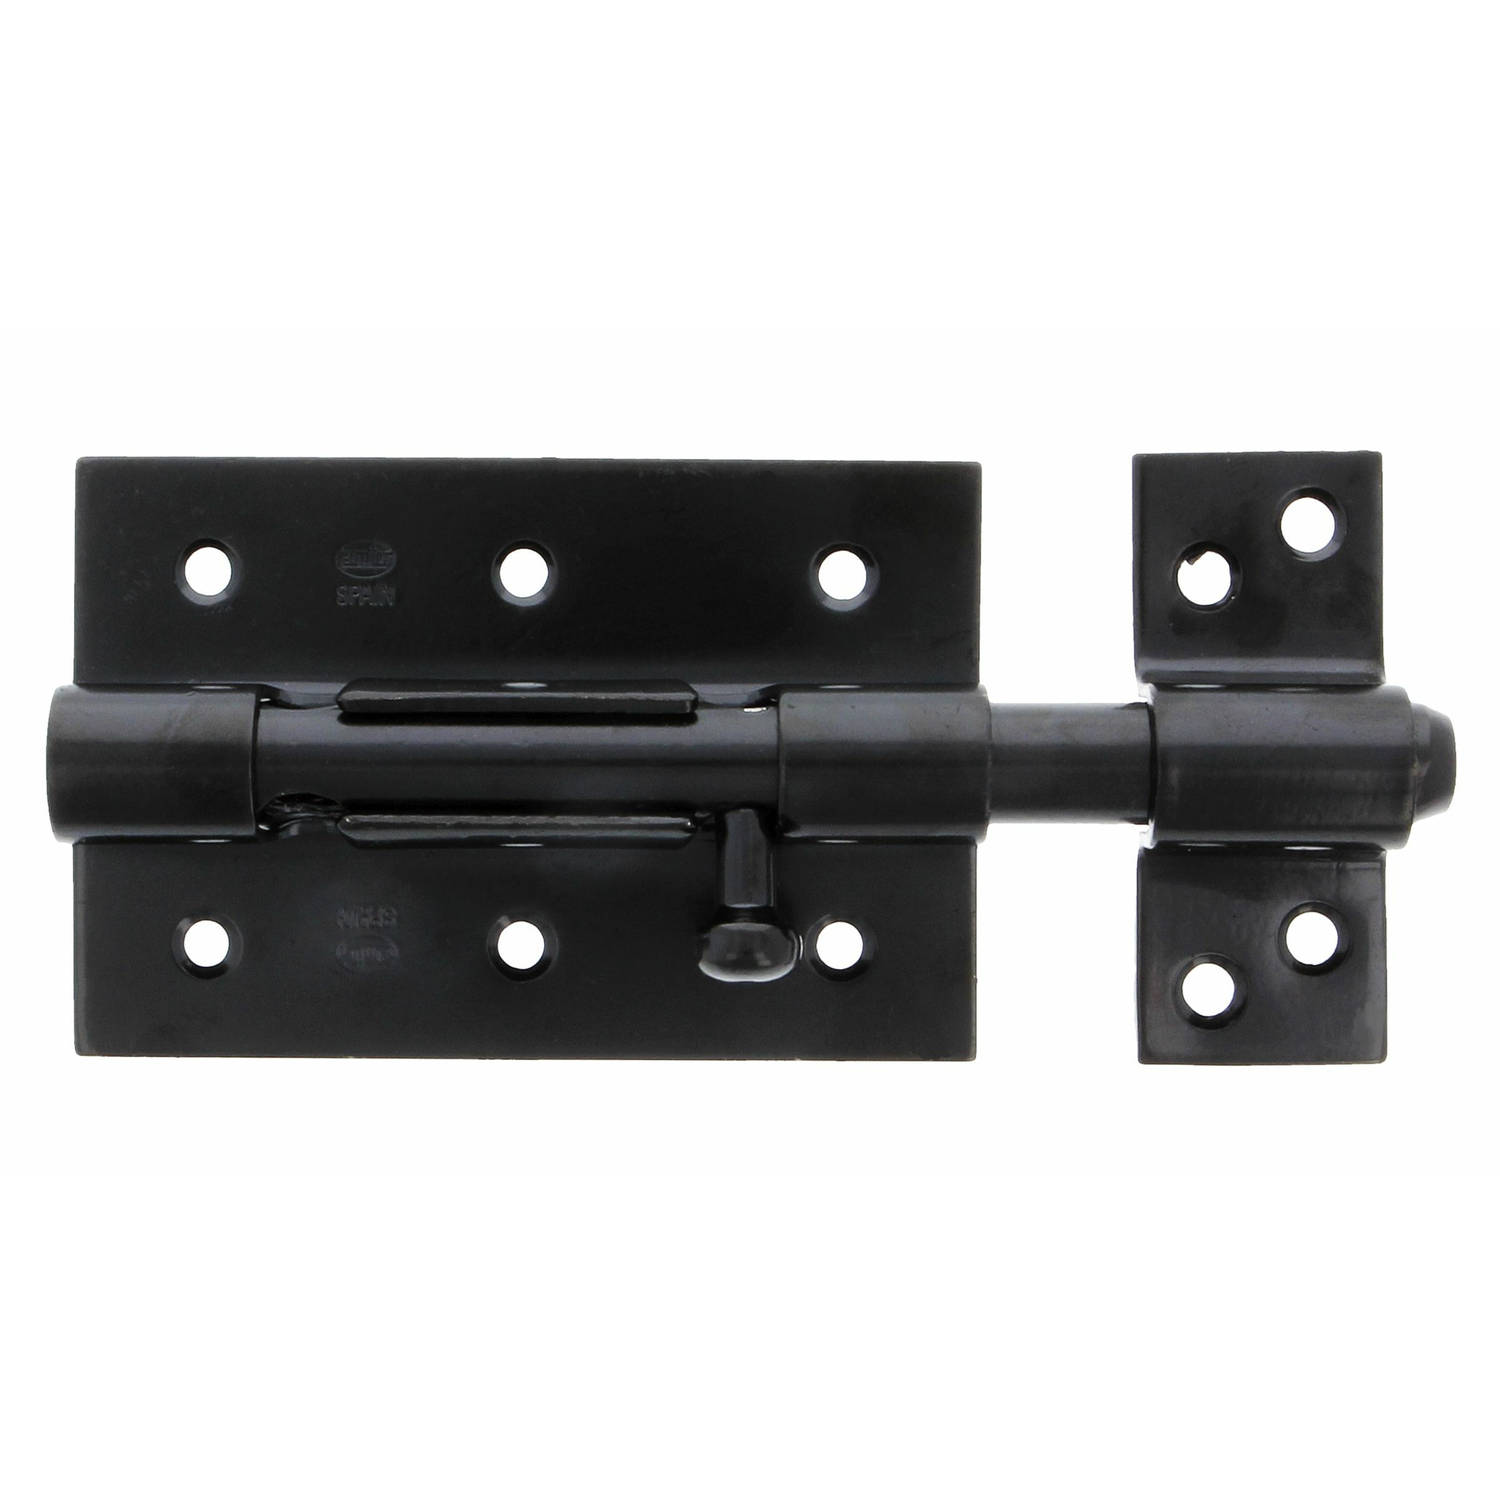 AMIG schuifslot/plaatgrendel - staal - 8.5cm - zwart - incl schroeven - deur - raam - geschikt voor hangslot (niet inbegrepen)